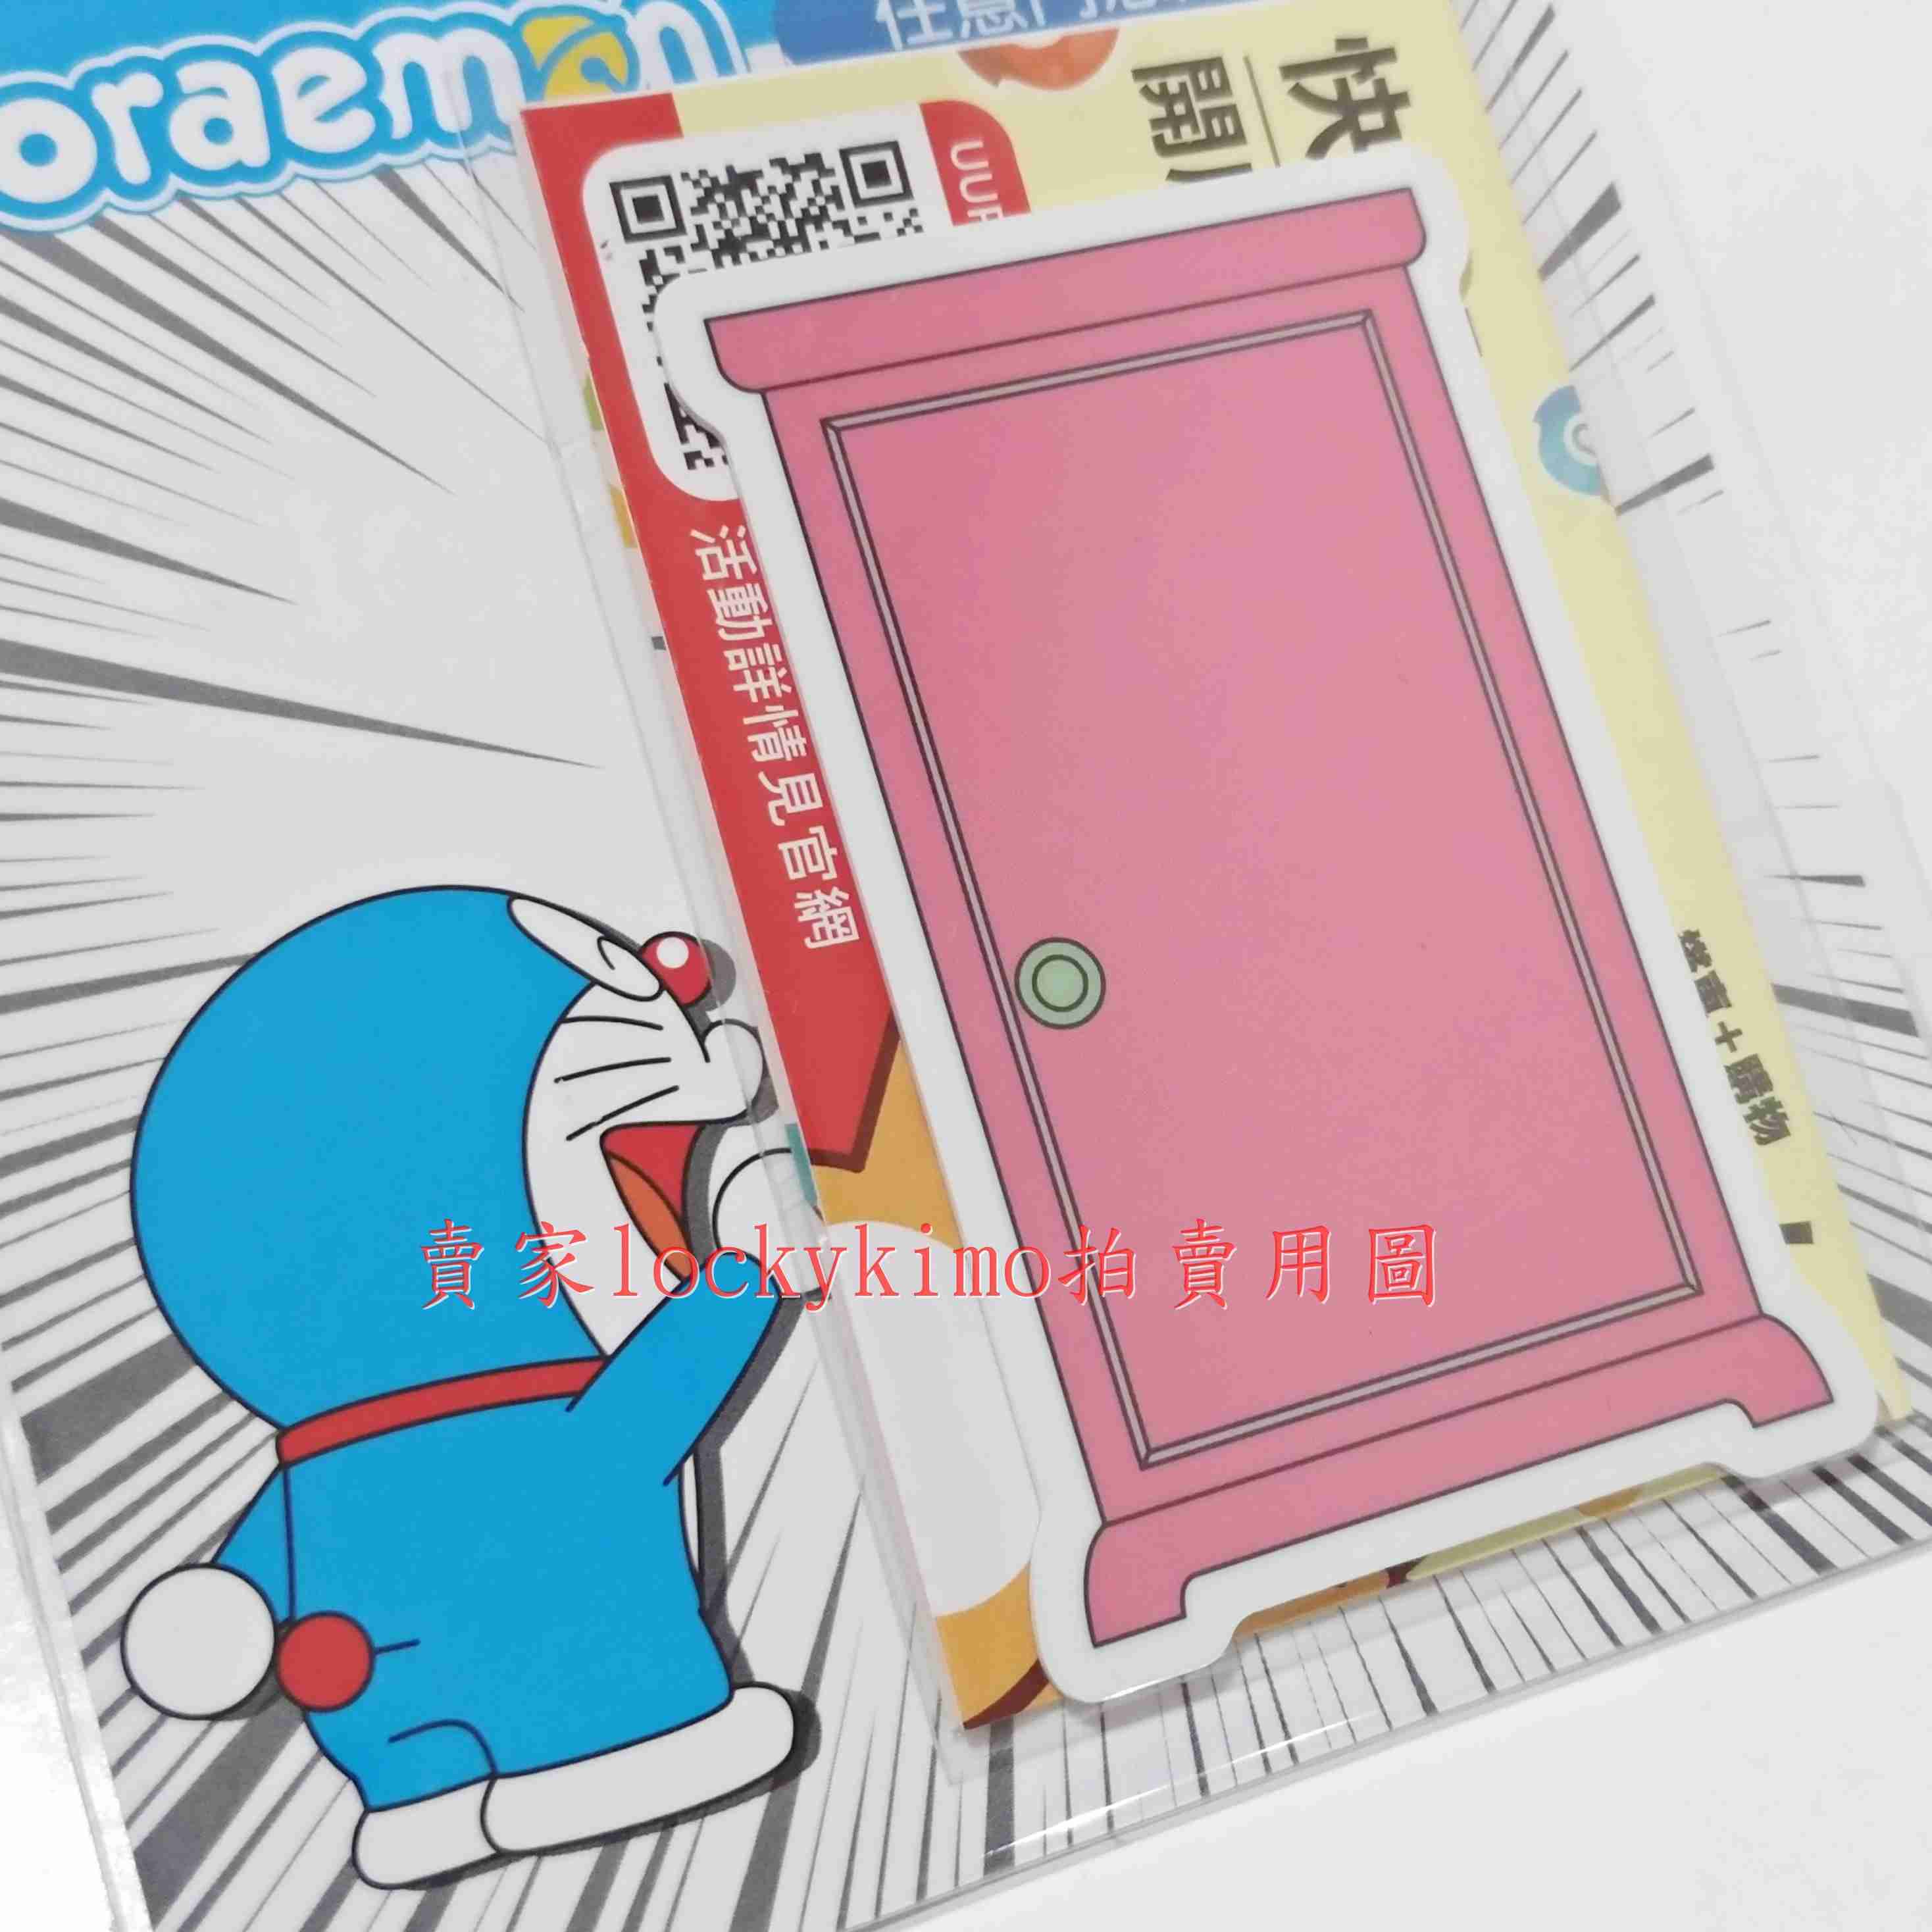 【哆啦A夢 悠遊卡 記憶麵包 任意門 吐司】收藏卡 Doraemon 珍藏卡 哆啦a夢 機器貓 小叮噹 多啦A夢 超能貓